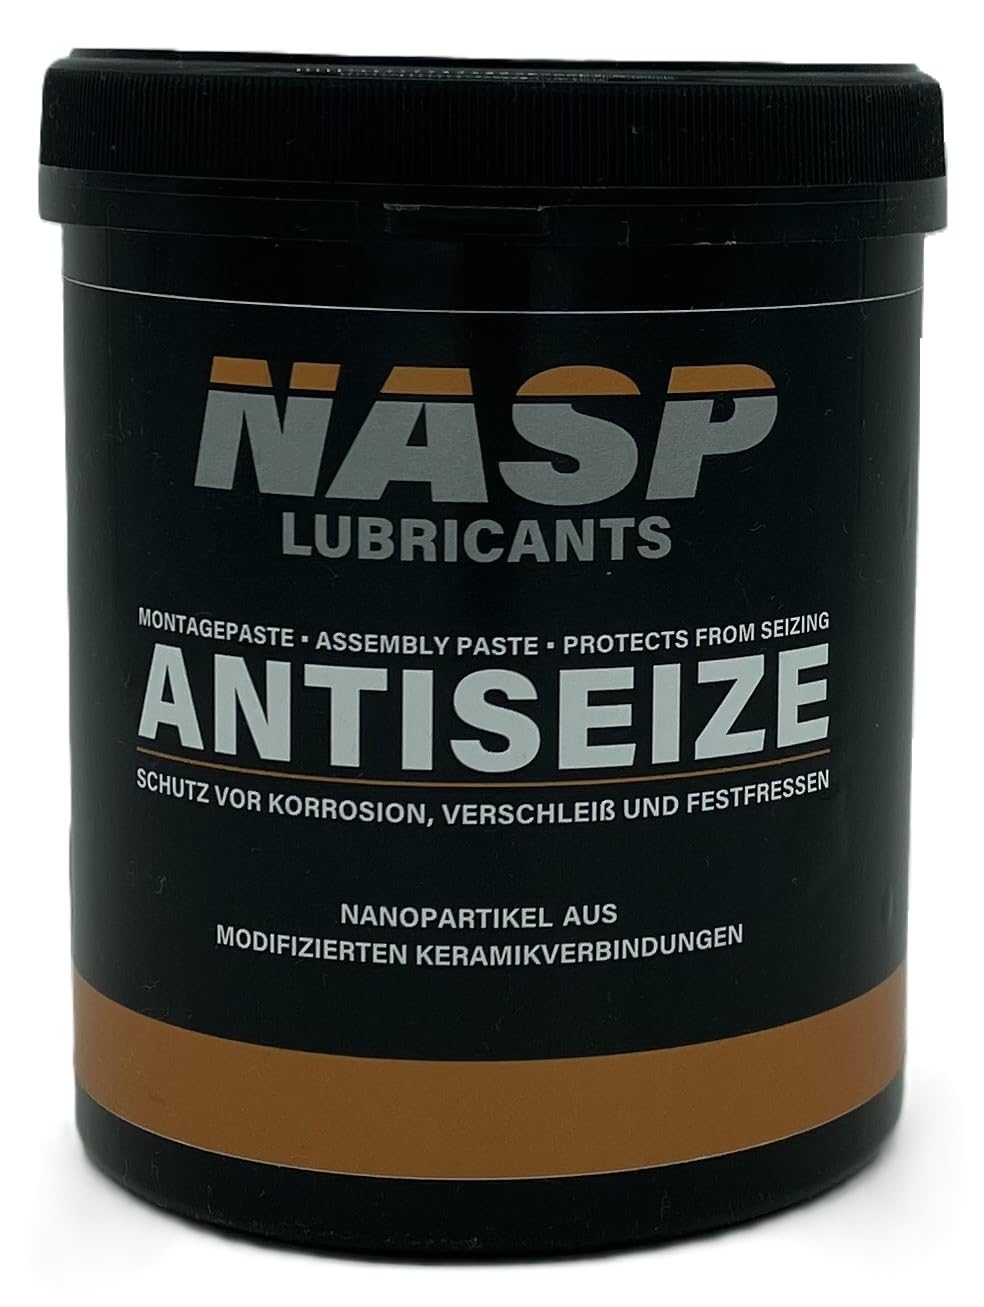 NASP Anti-Seize Keramikpaste Montagepaste Schraubenpaste Grease Schutz vor Korrosion Festfressen 1kg Dose - MADE IN GERMANY